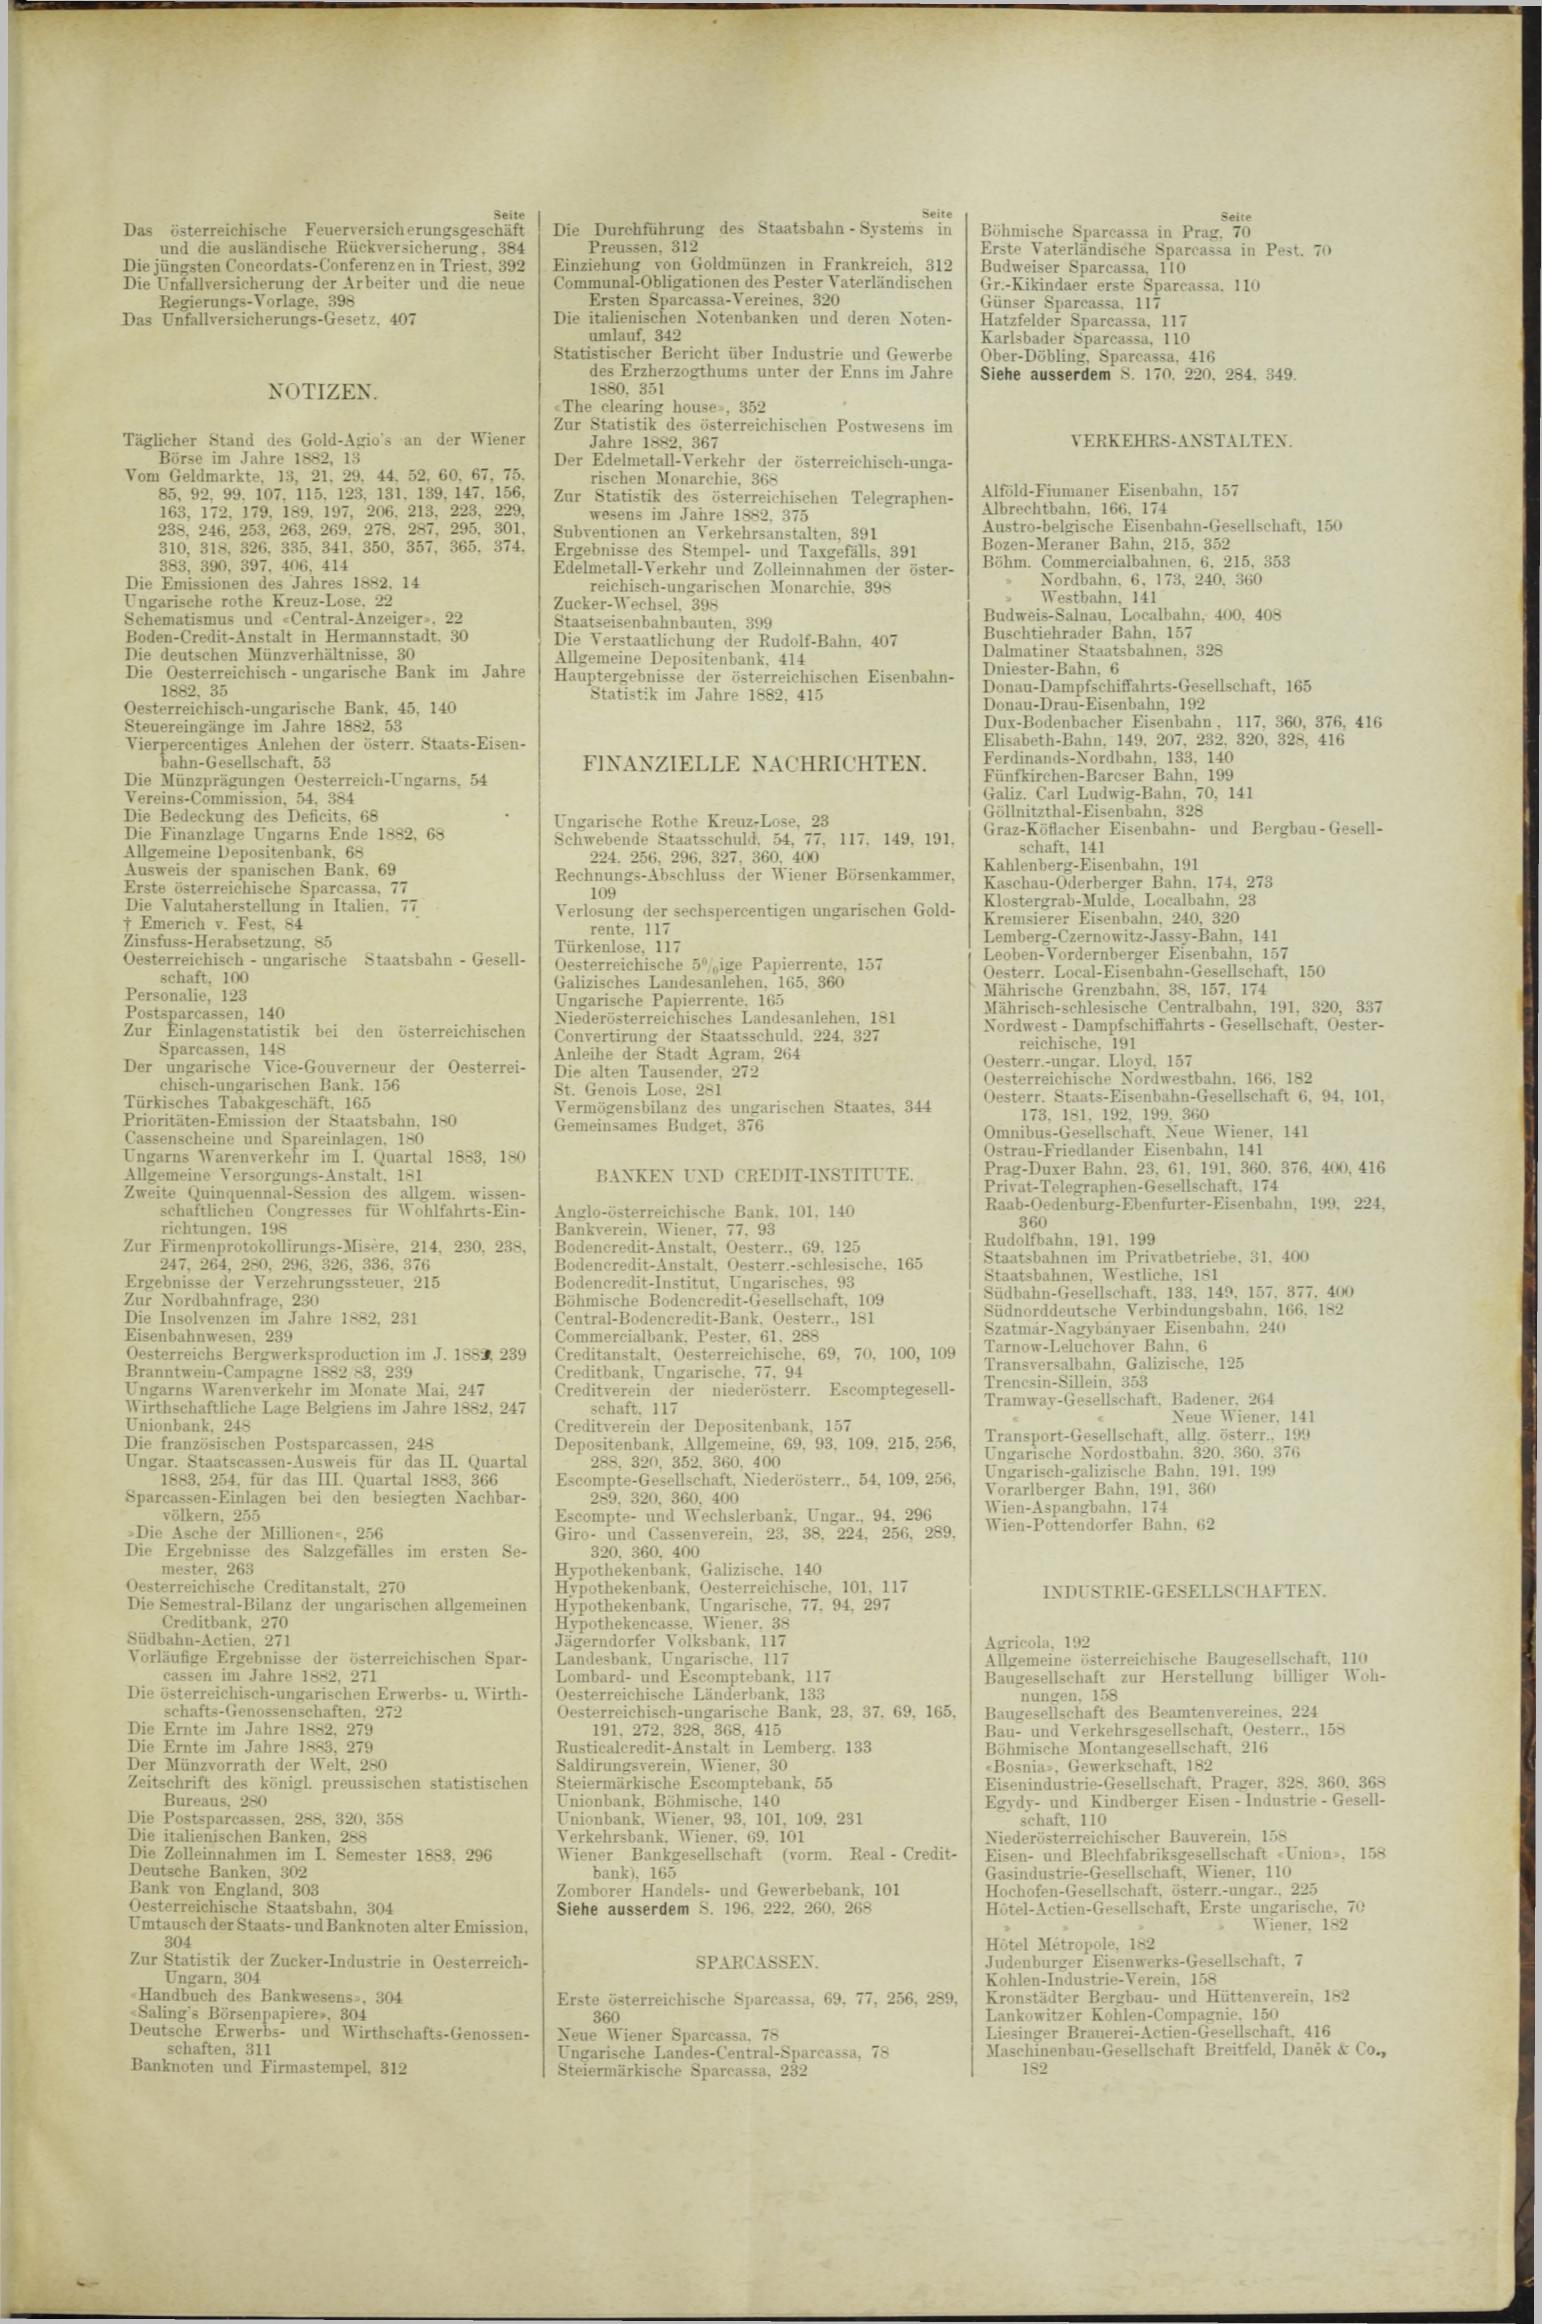 Der Tresor 27.09.1883 - Seite 11